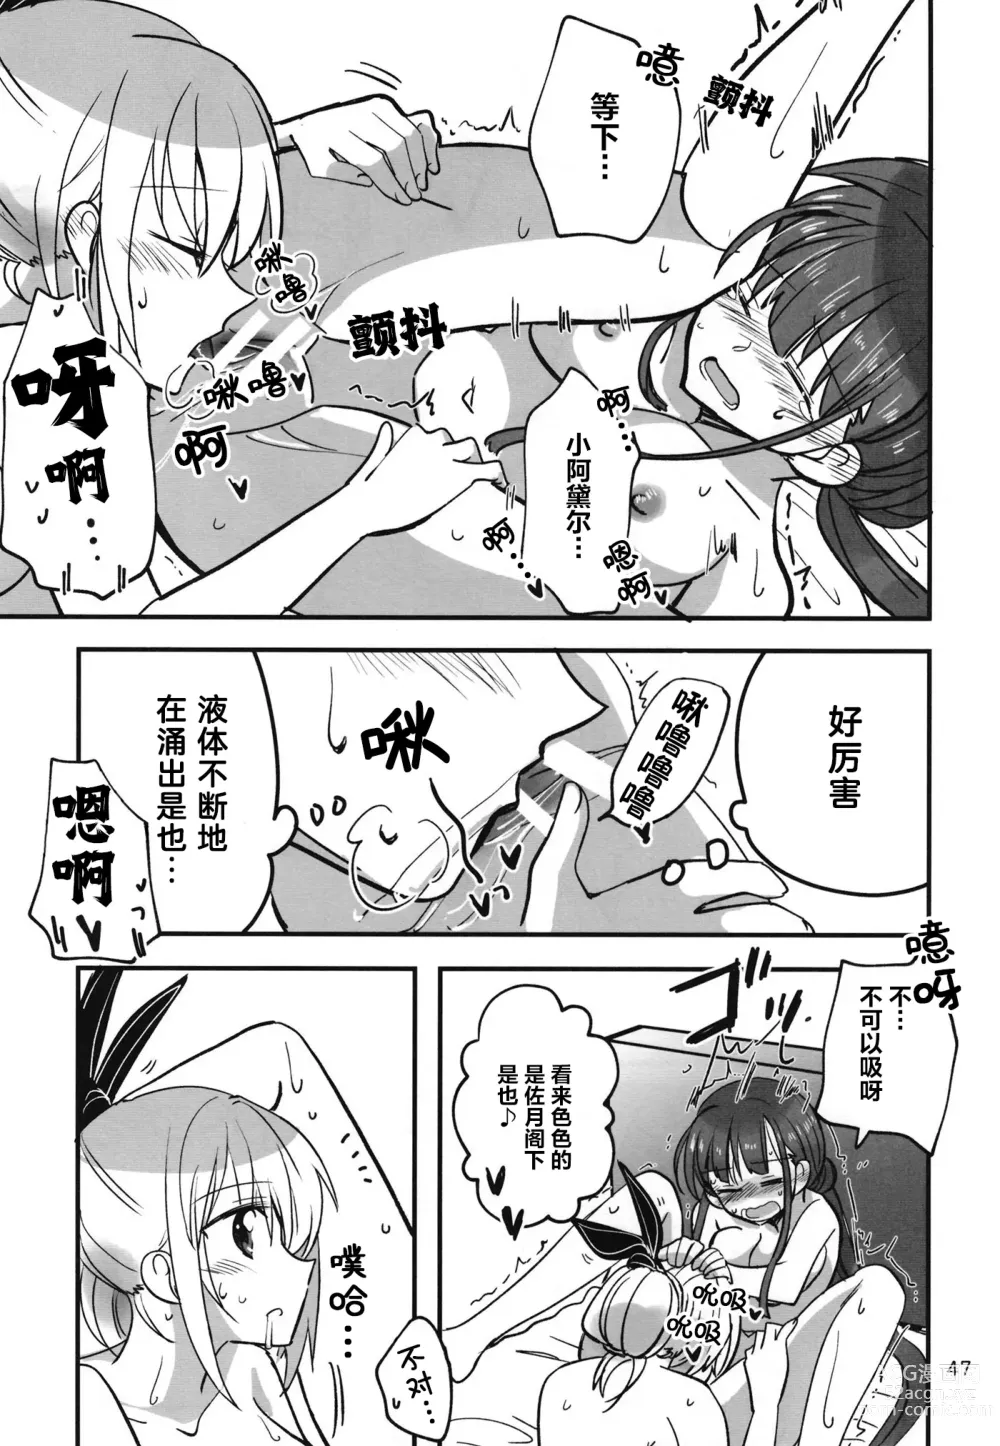 Page 46 of doujinshi 无法忍耐的忍者翱翔于深夜